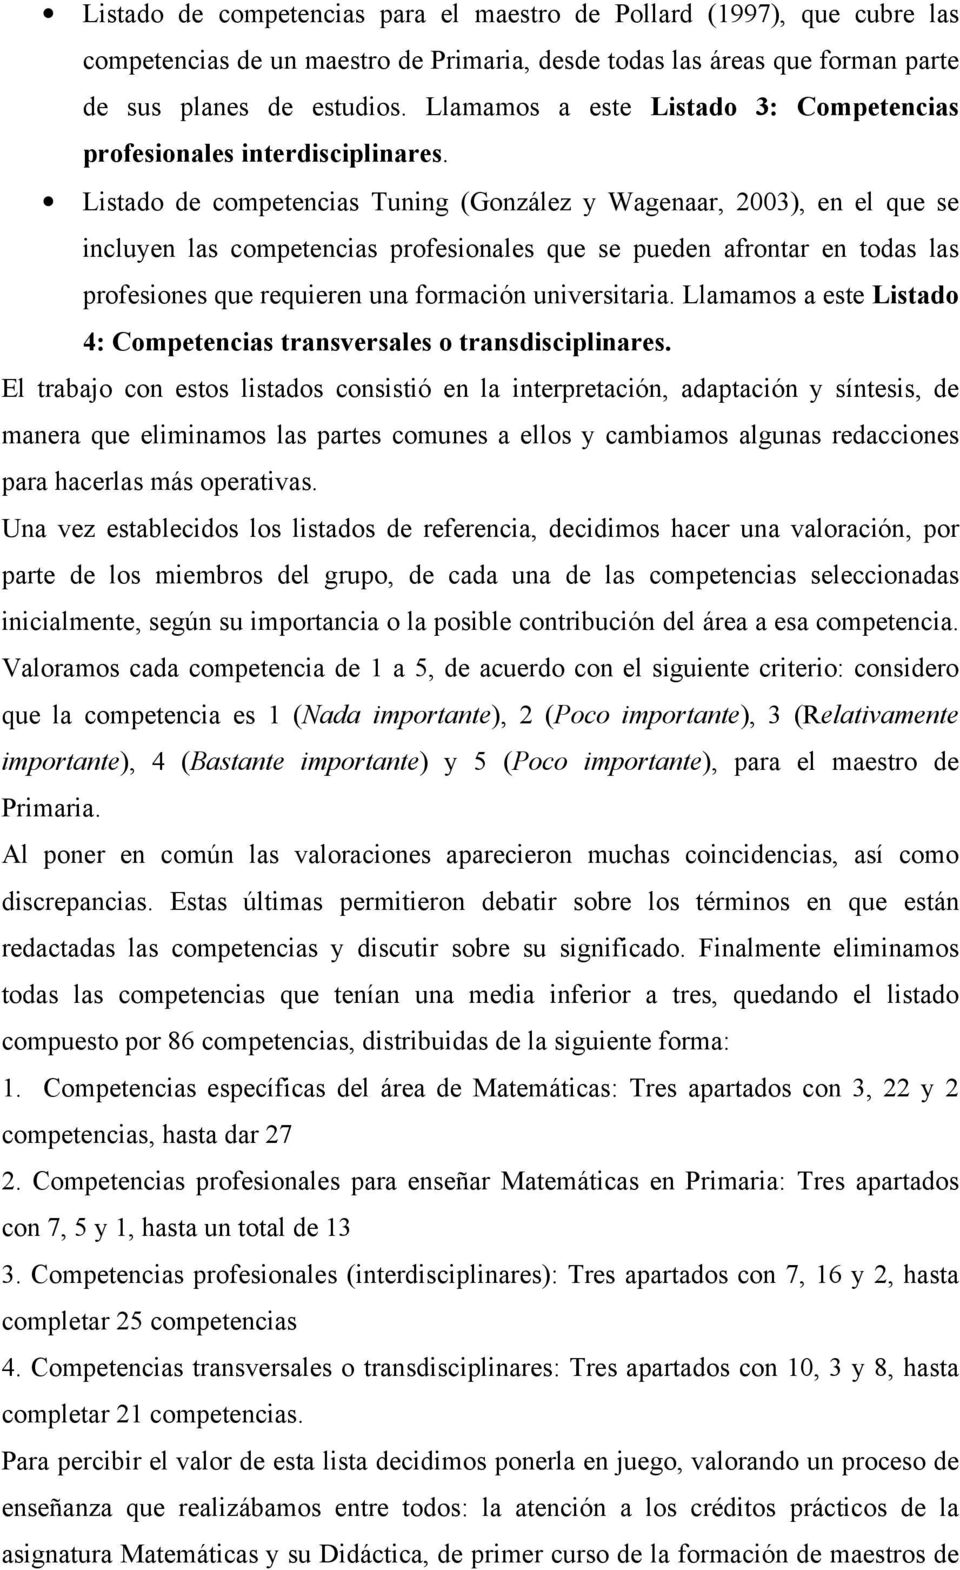 Listado de competencias Tuning (González y Wagenaar, 2003), en el que se incluyen las competencias profesionales que se pueden afrontar en todas las profesiones que requieren una formación